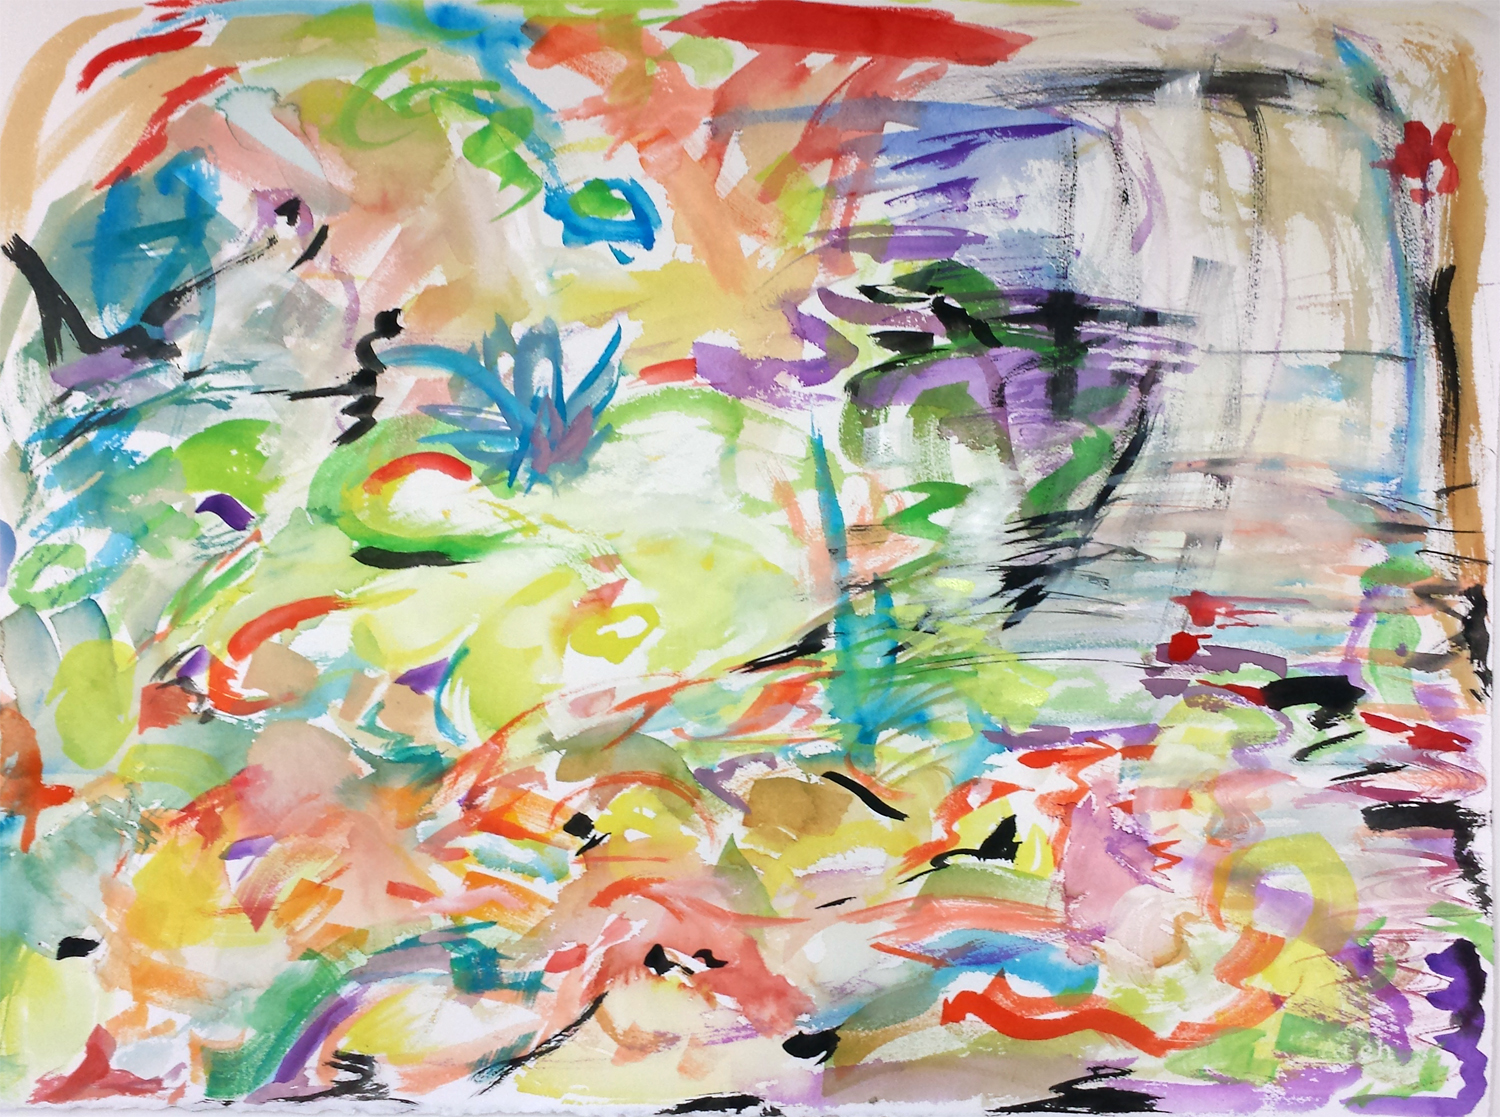 Koi Impression II, gouache on paper, 22" x 30" 2015